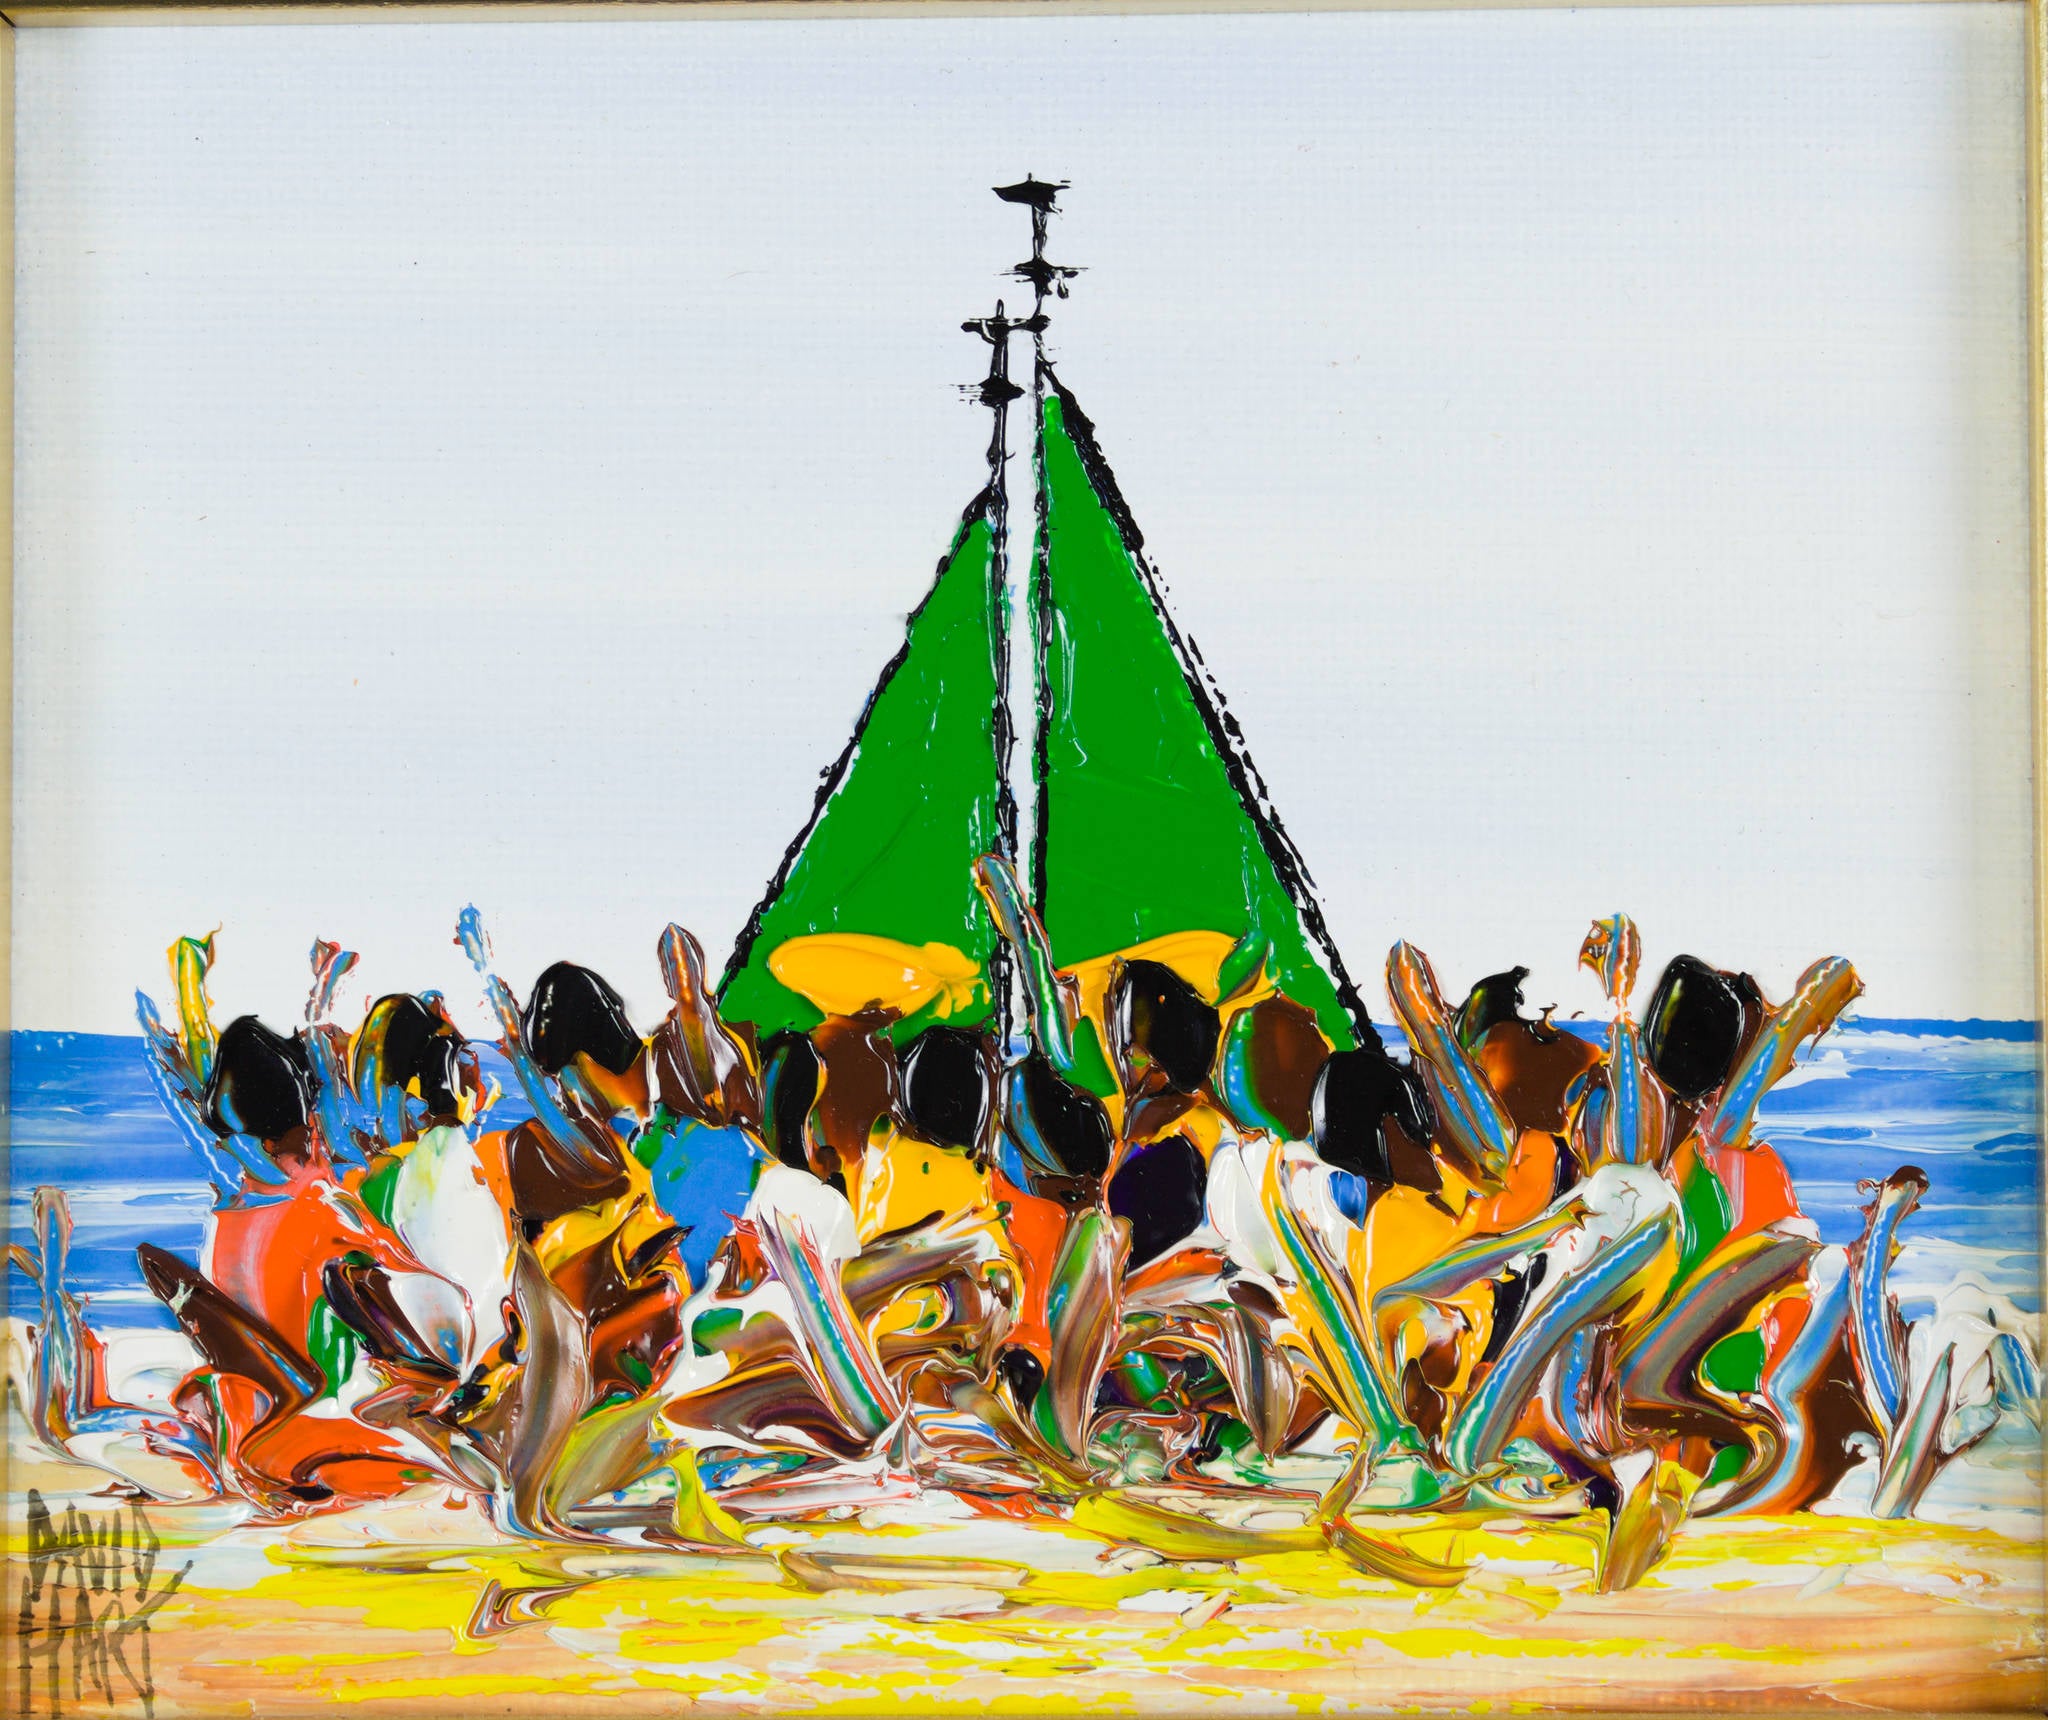 David Hart 'Untitled (Green Sailboat)'